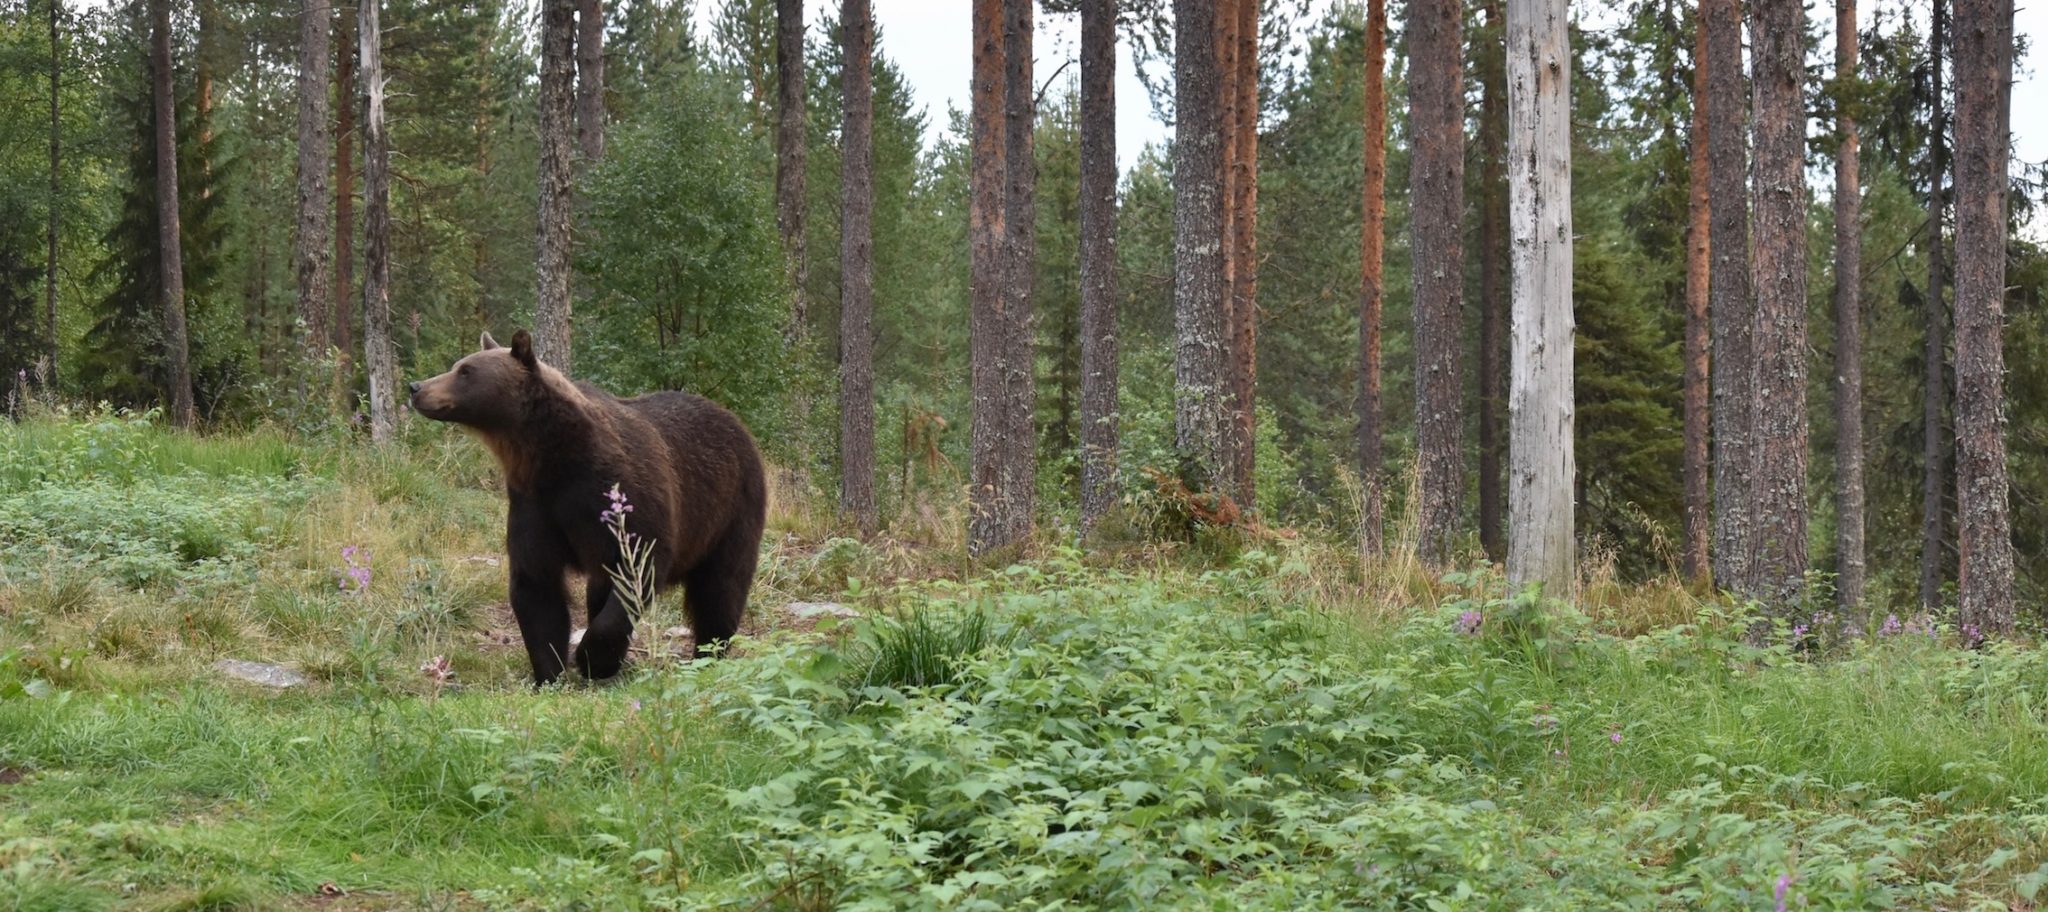 A brown bear walking through the trees 